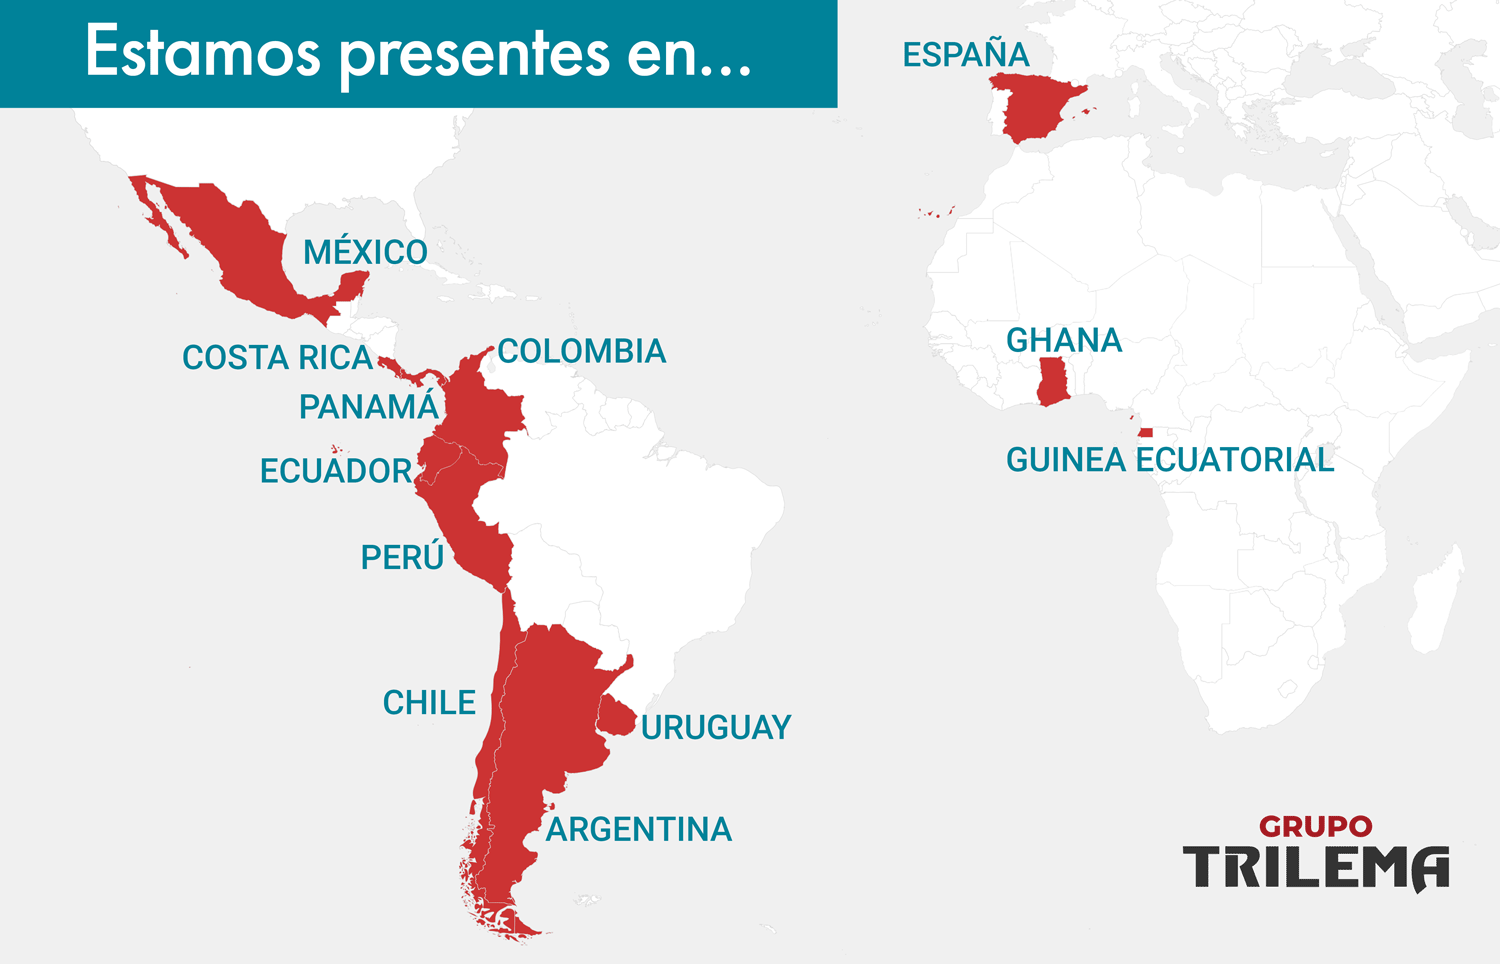 Trilema está presente en estos países con sus formaciones